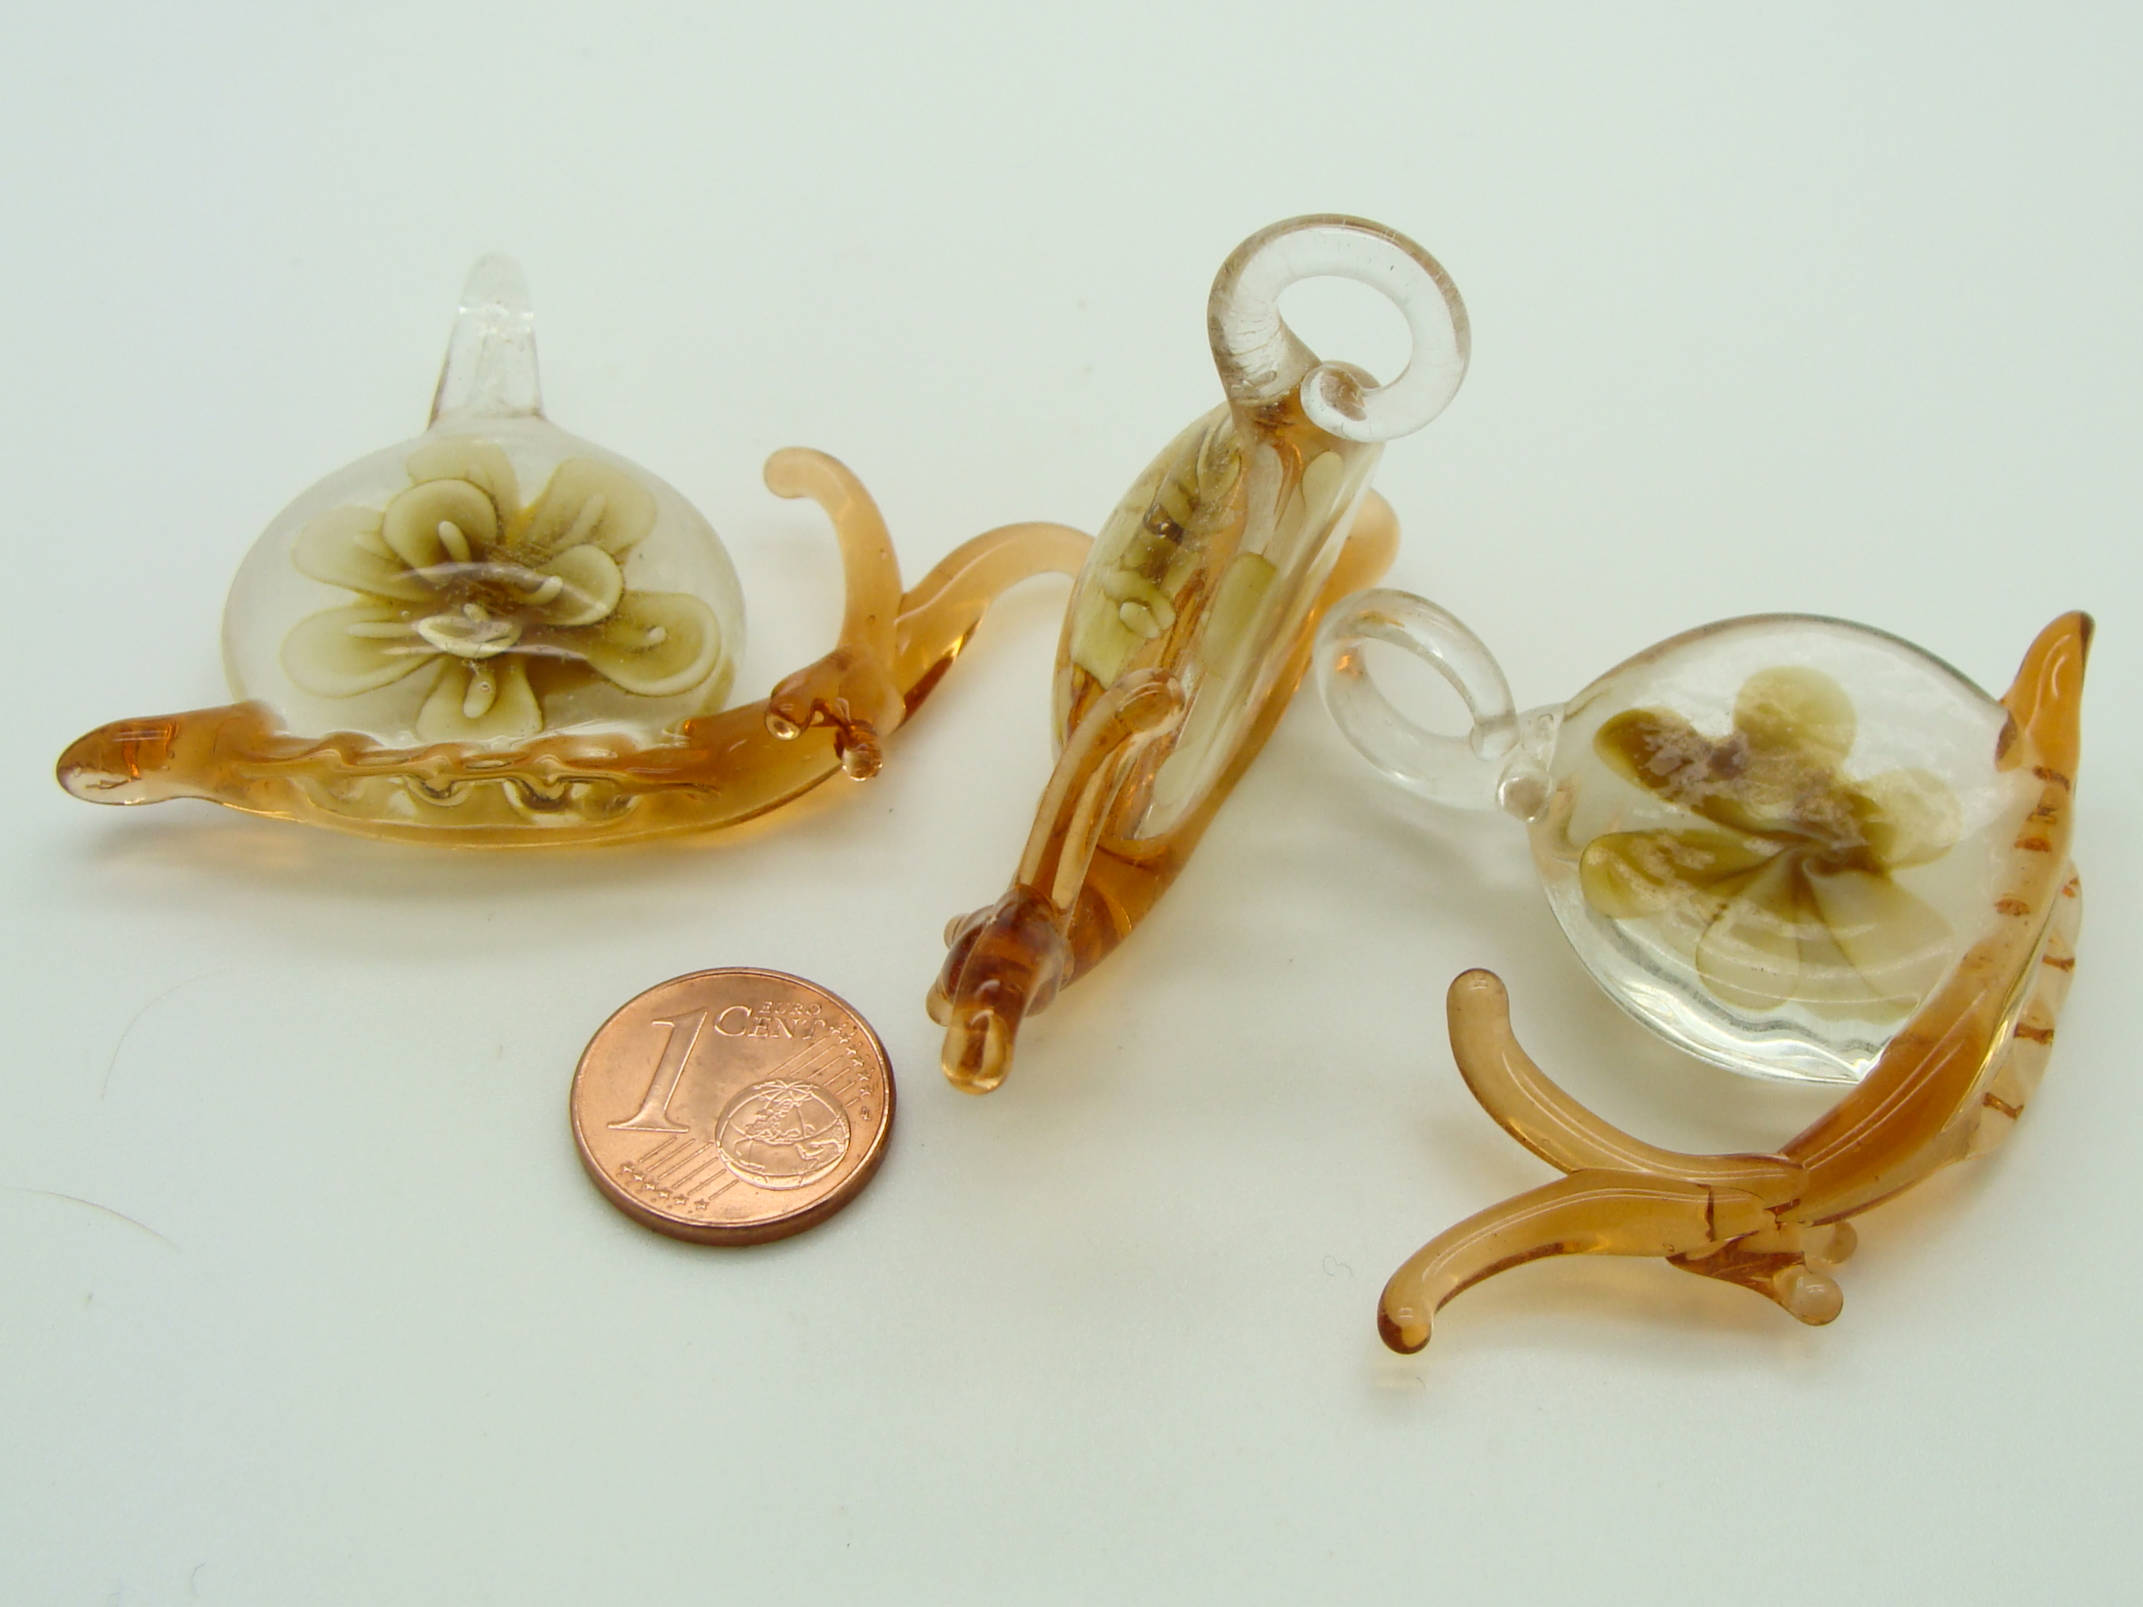 pendentif verre escargot marron Pend-111